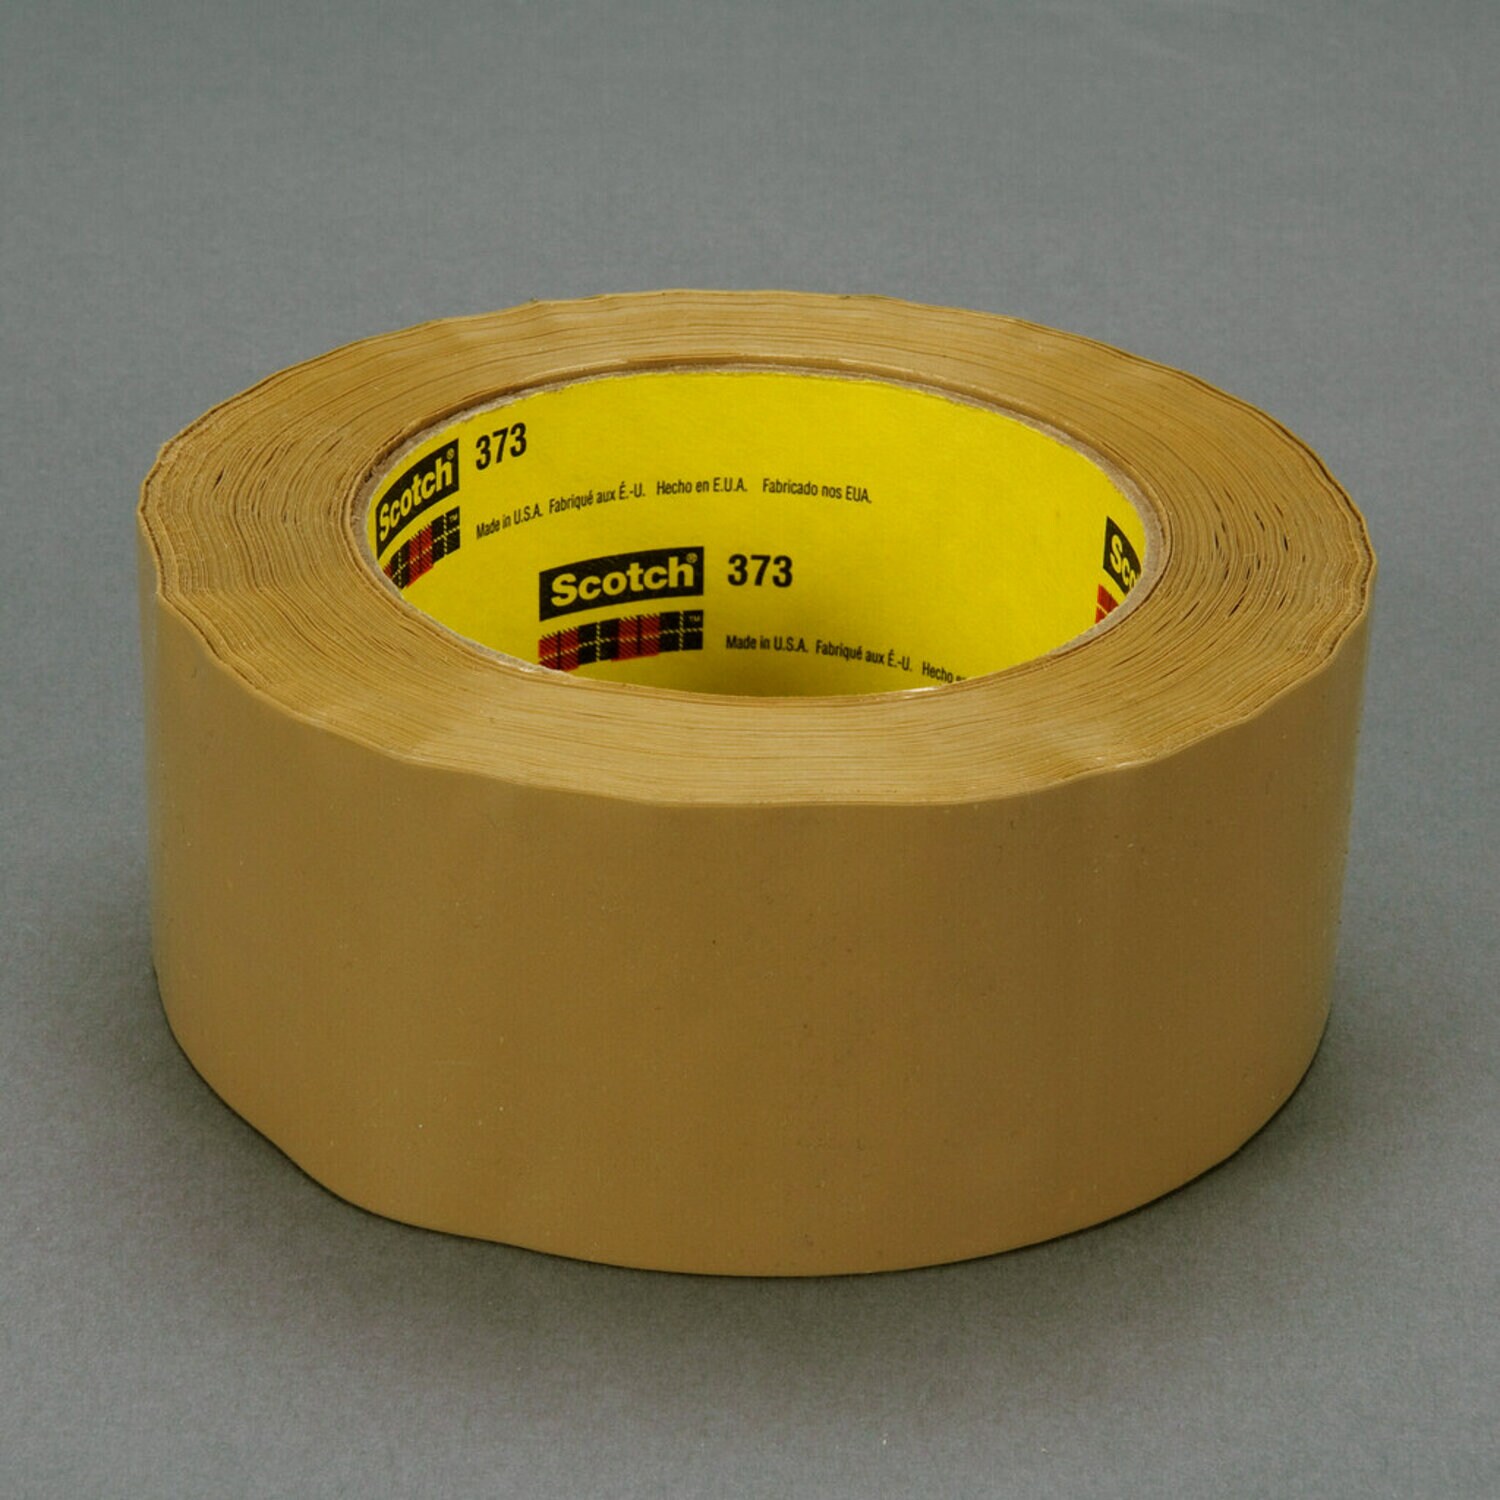 7000001196 - Scotch Box Sealing Tape 373, Tan, 72 mm x 50 m, 24/Case